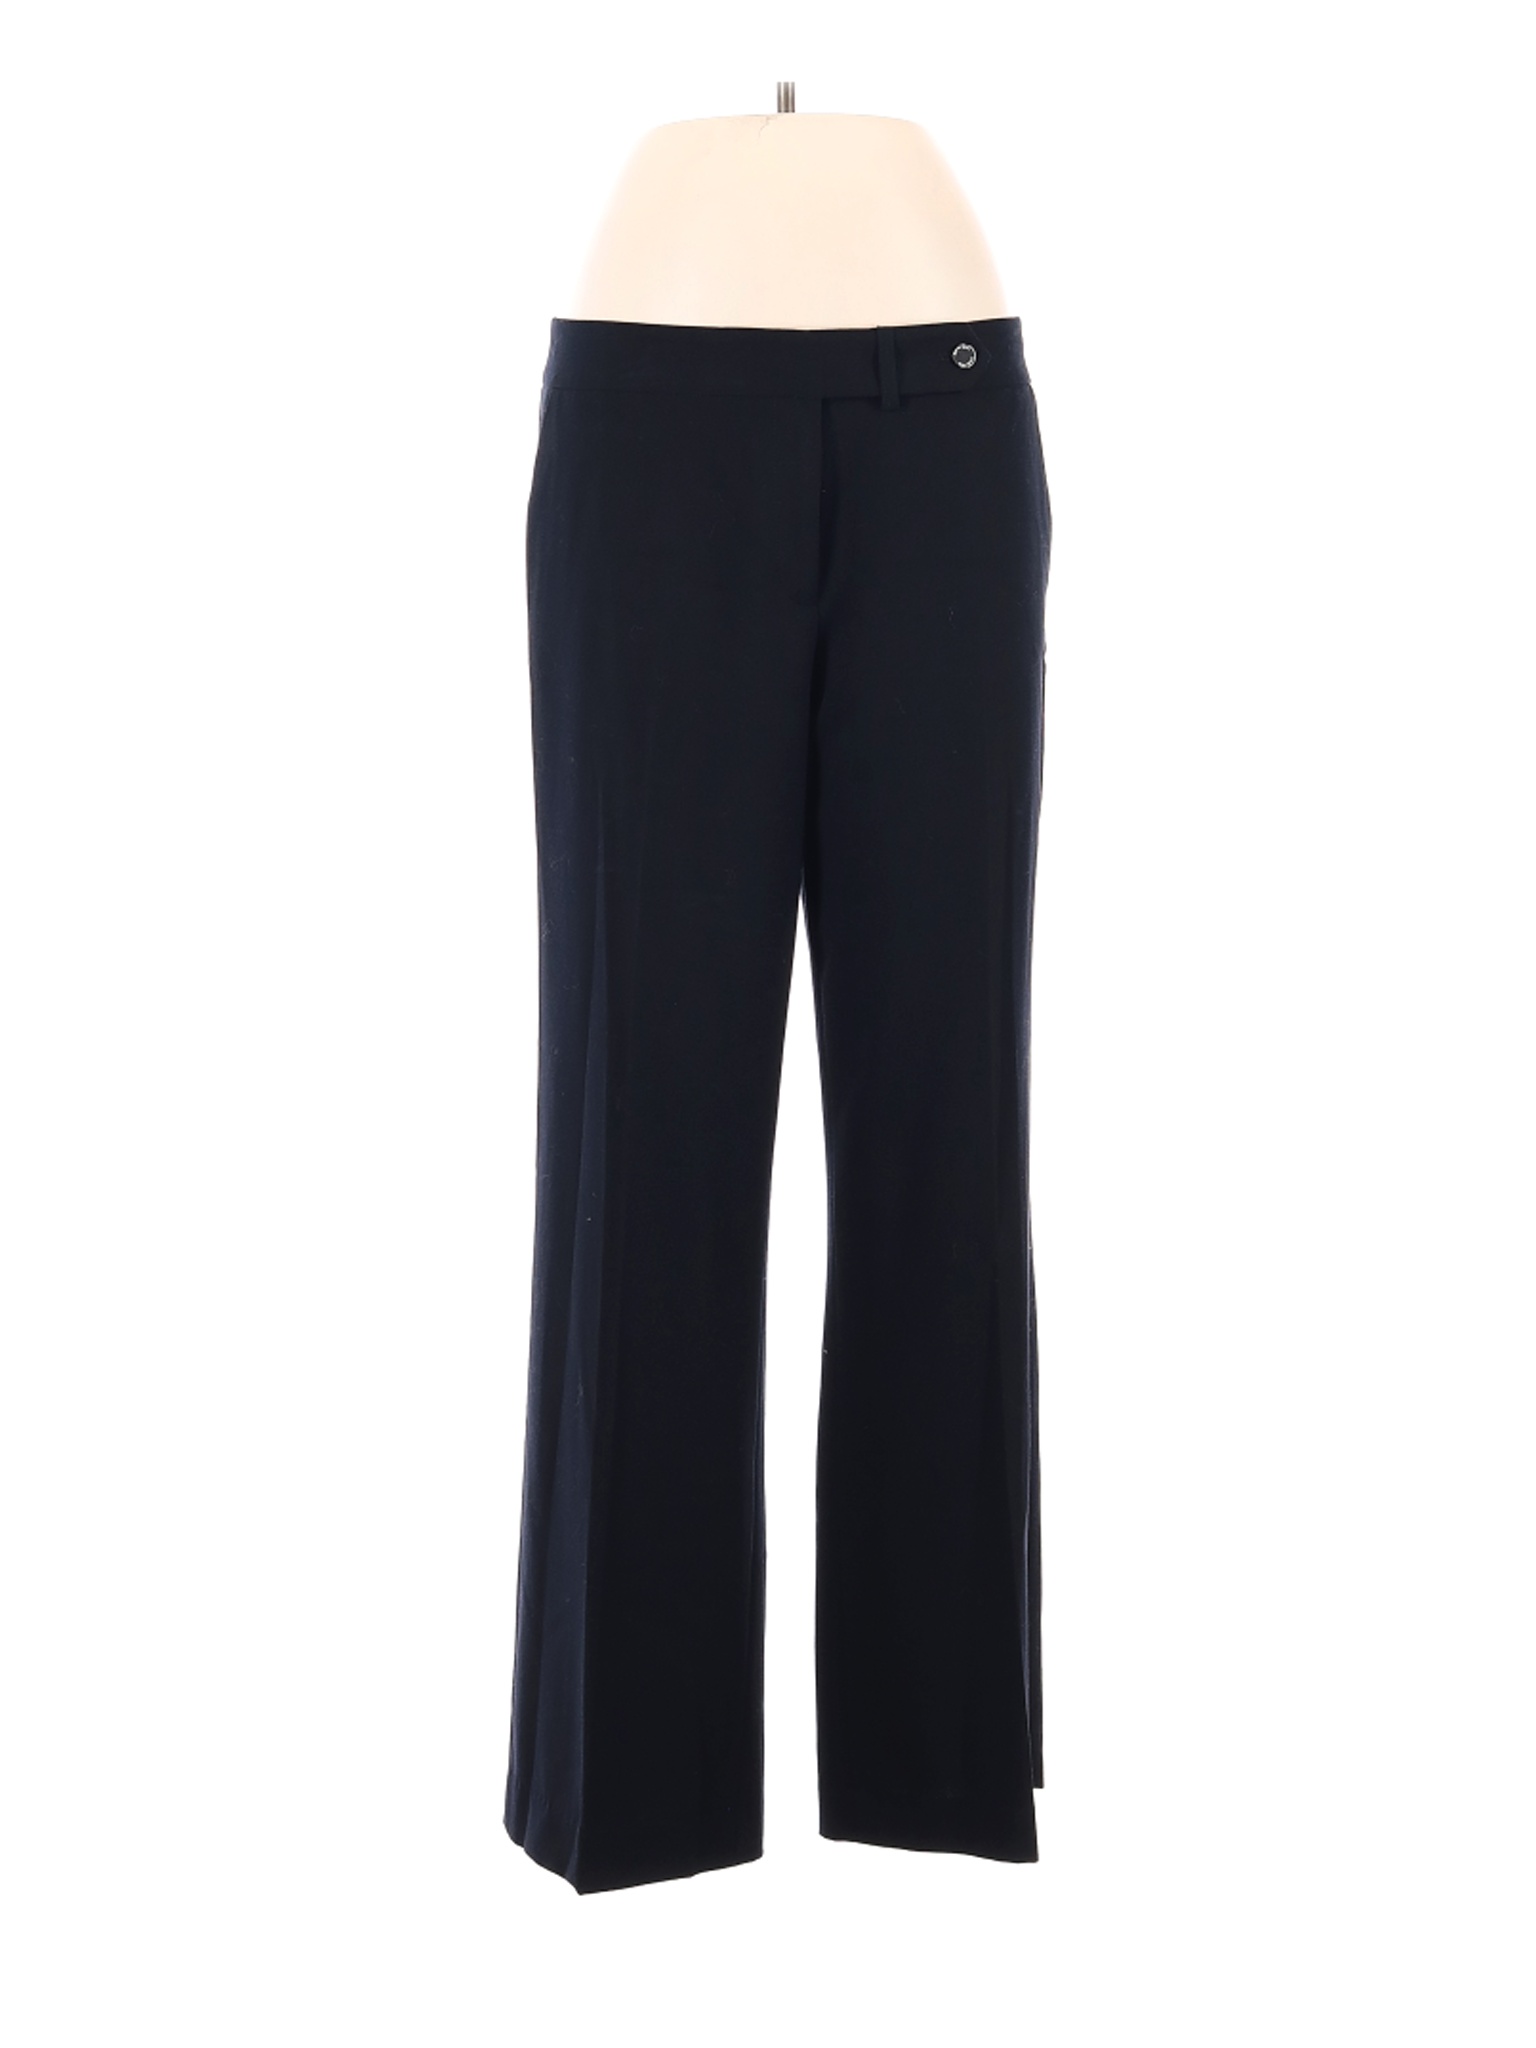 Calvin Klein Women Black Dress Pants 10 | eBay